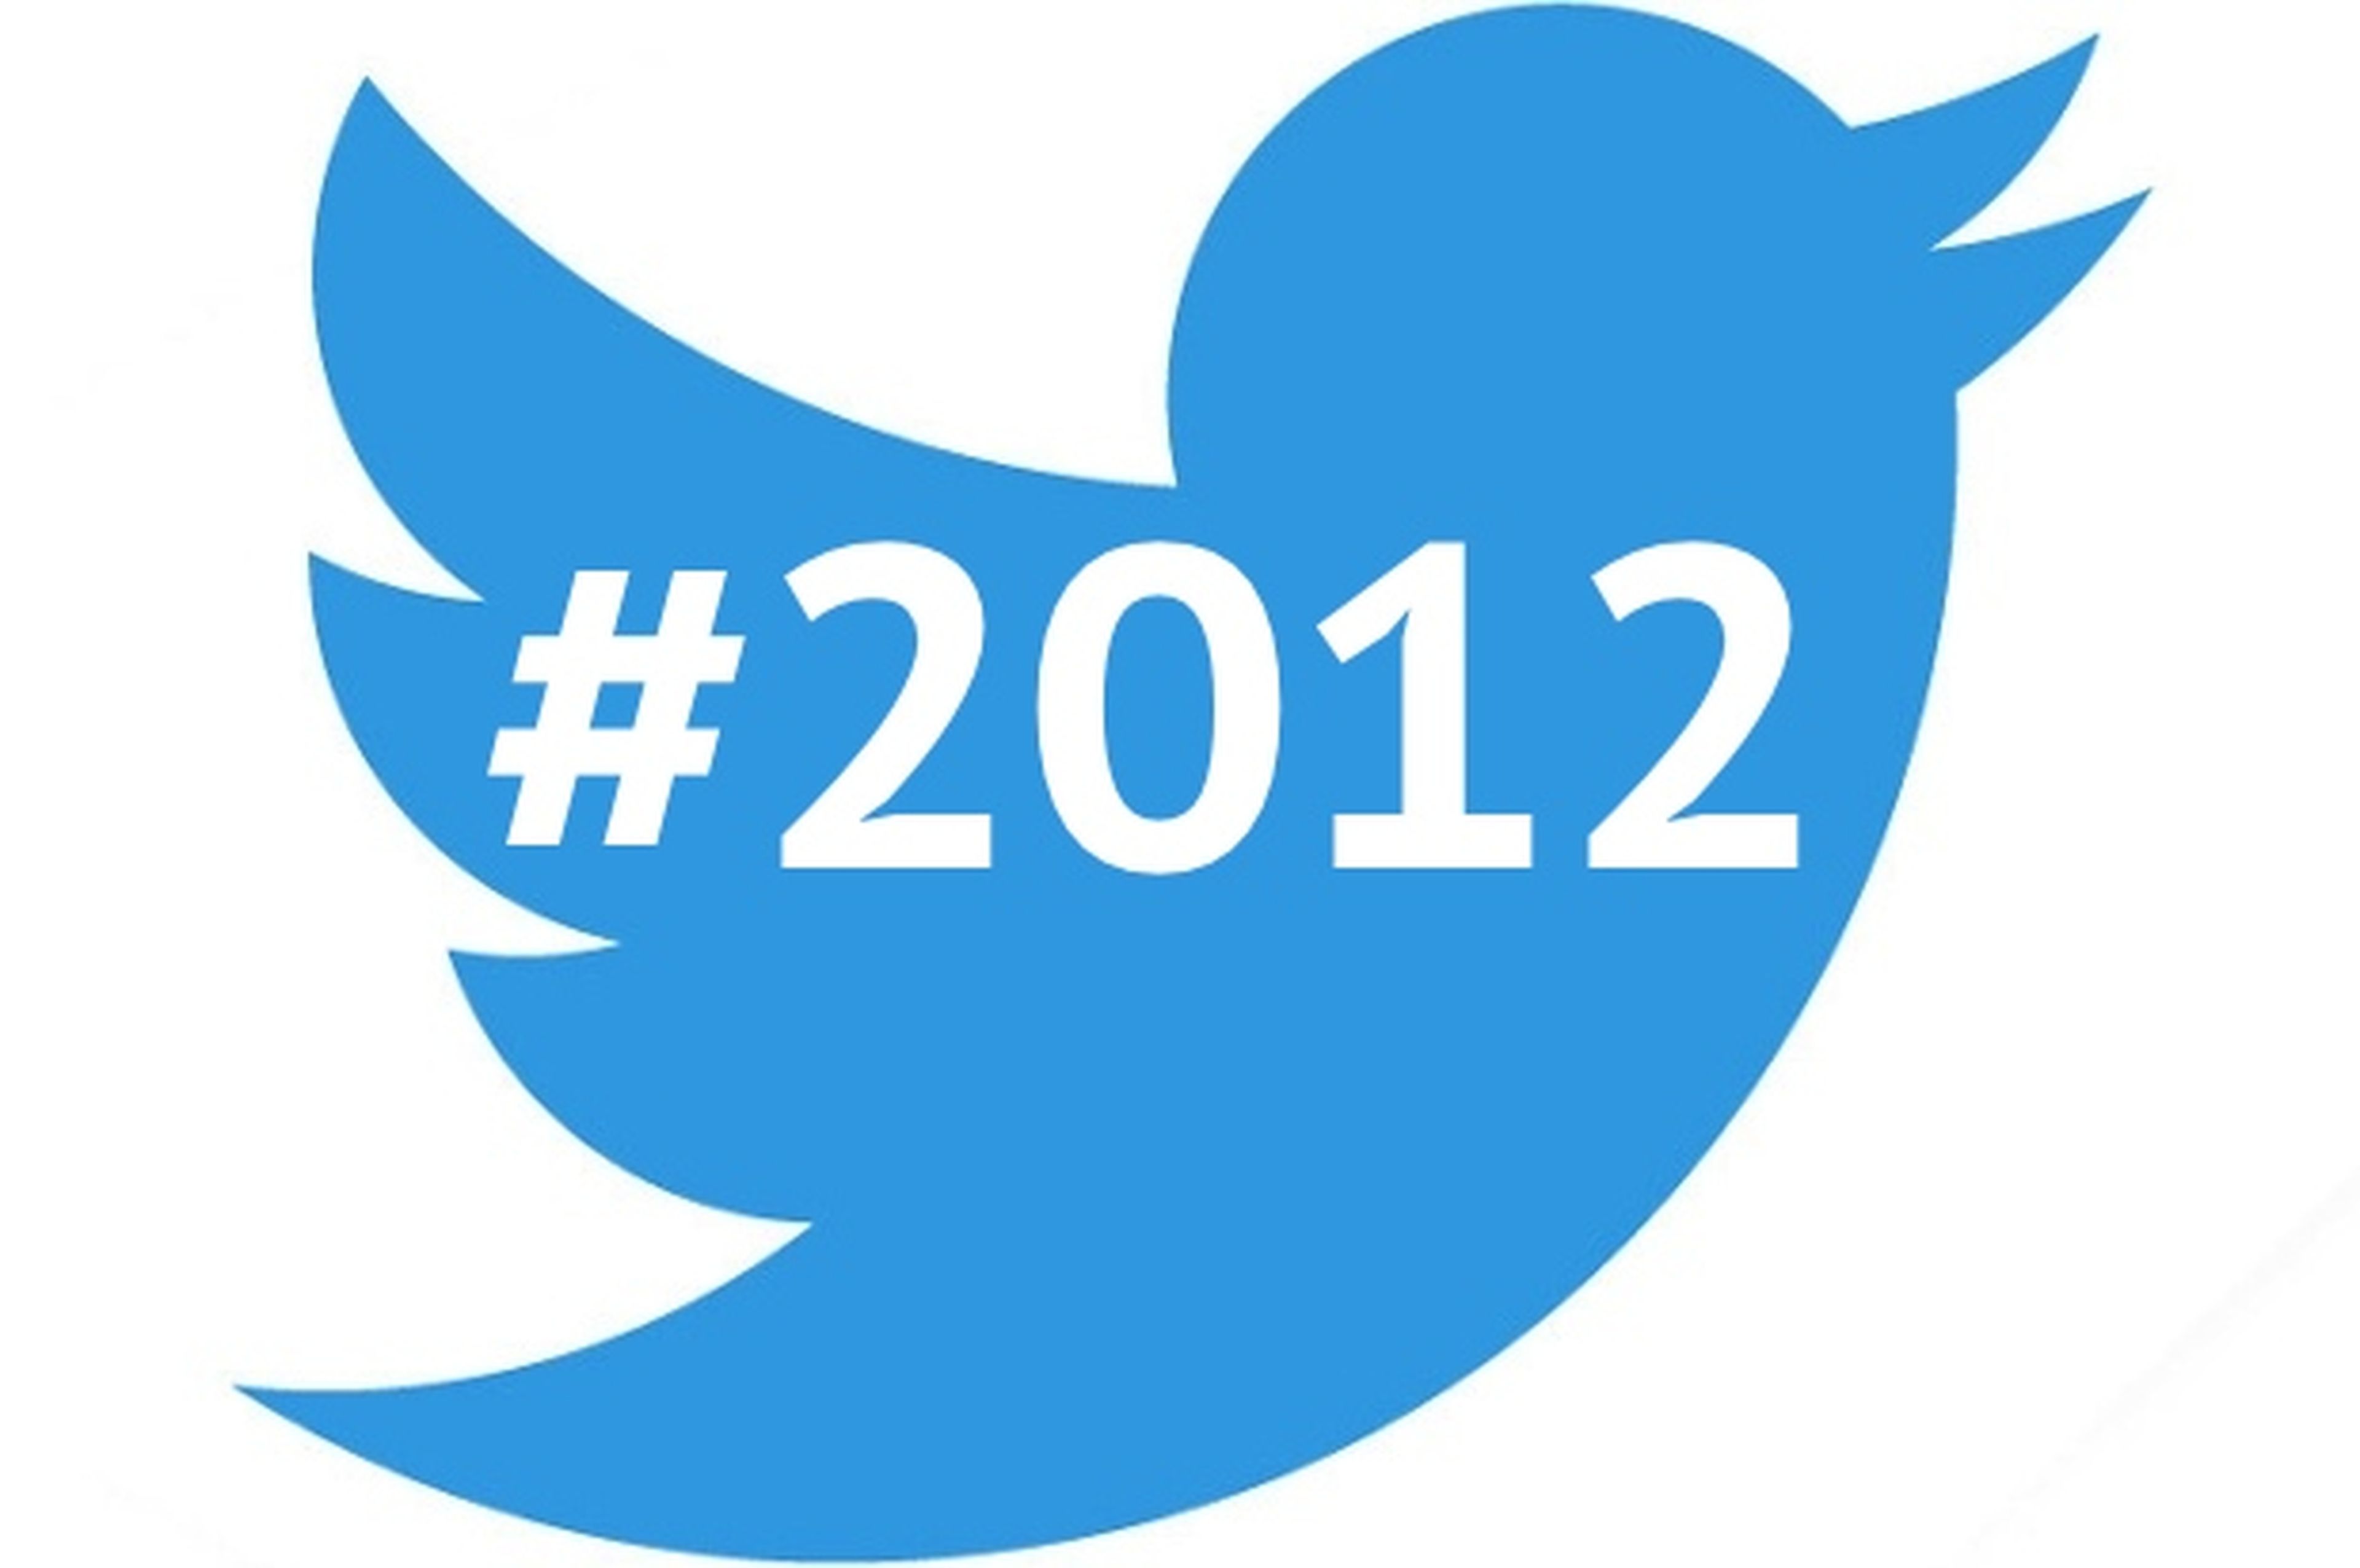 Los trending topics de Twitter de 2012